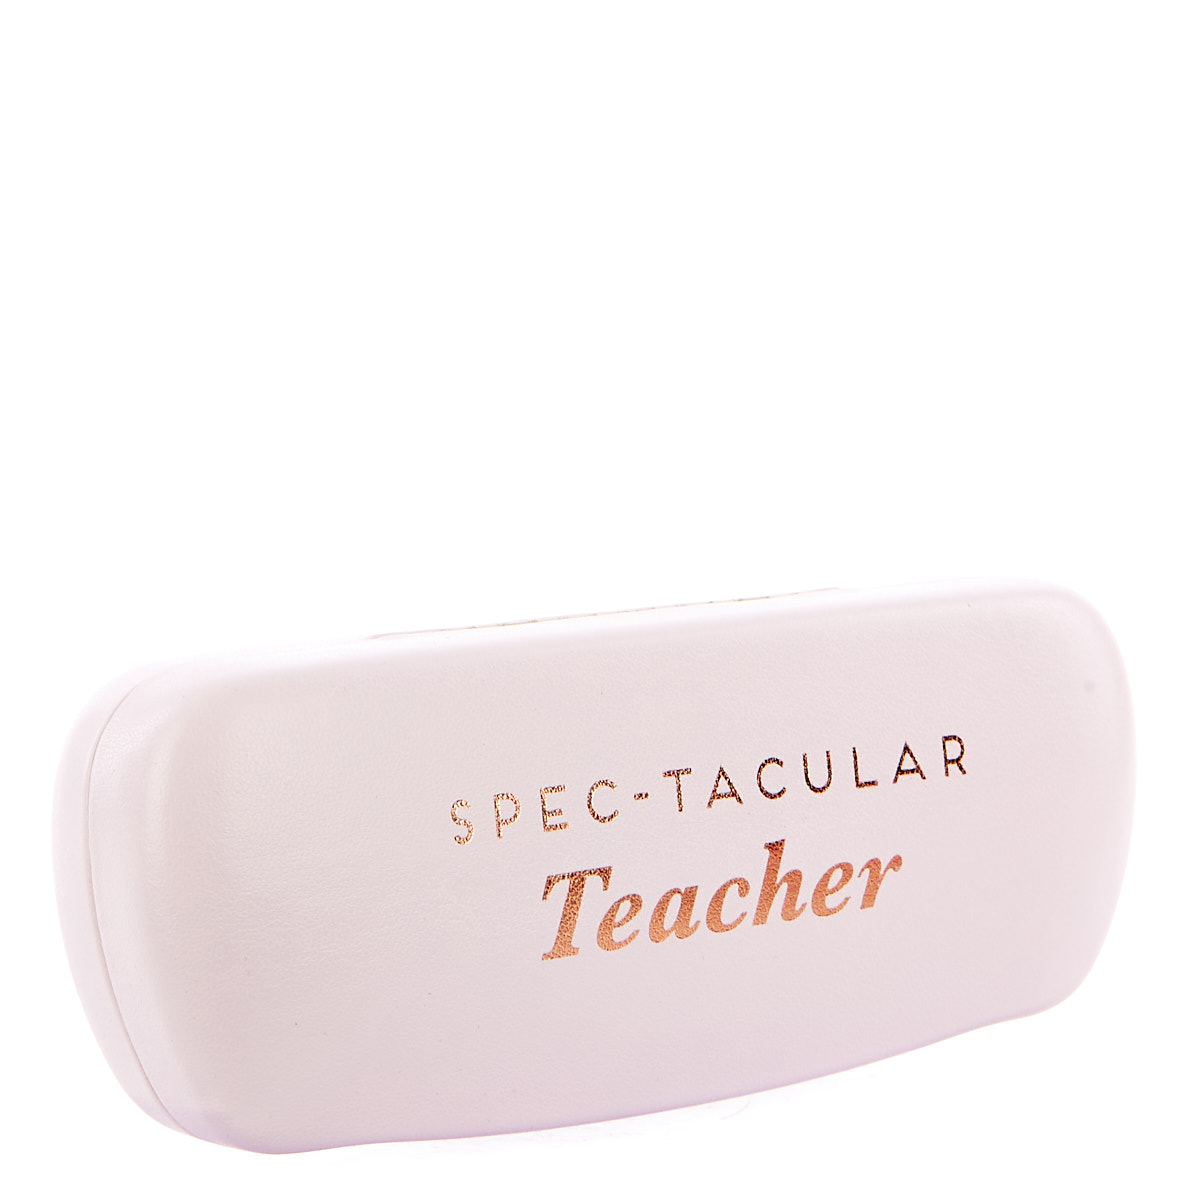 Spec-tacular Teacher Glasses Case